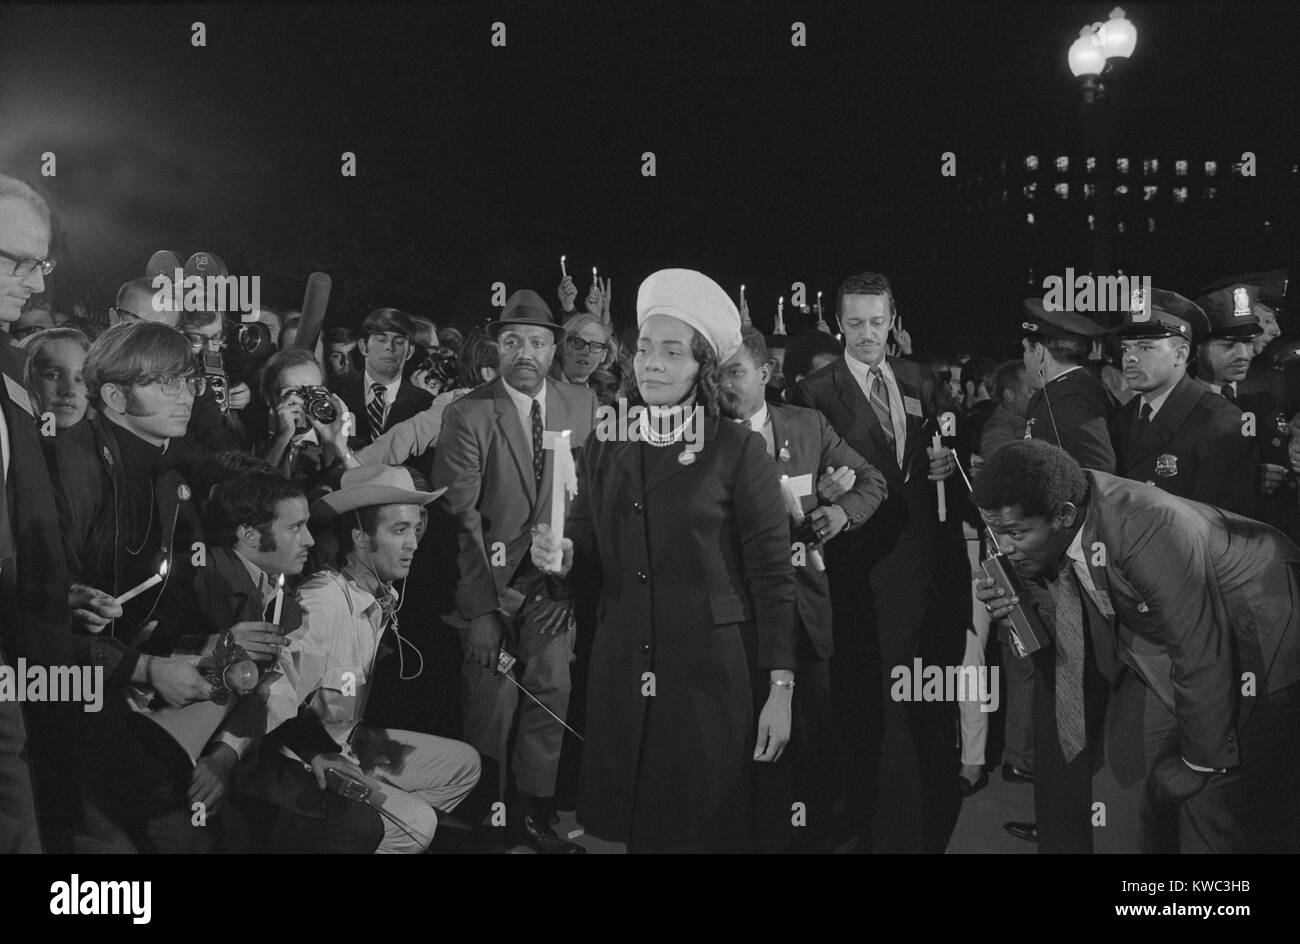 Coretta Scott King am Moratorium zur Beendigung des Kriegs in Vietnam Krieg, Okt. 15, 1969. Halten Sie eine Kerze, die Witwe von Martin Luther King, Jr. führen die Nacht März zum Weißen Haus. (BSLOC 2015 14 107) Stockfoto